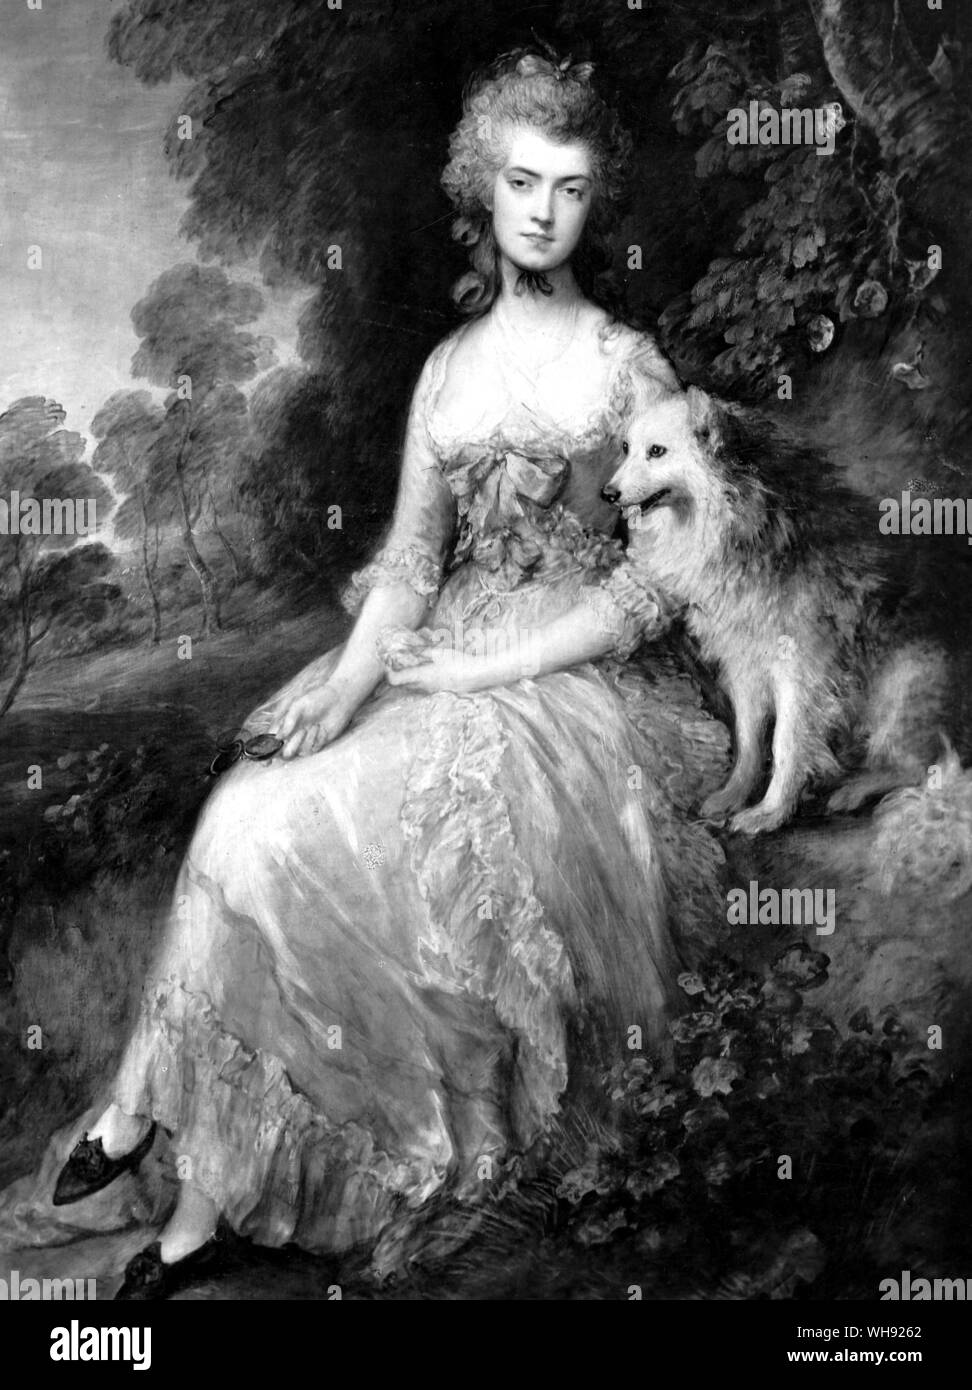 La signora Robinson, attrice inglese, romanziere e poeta (1758-1800), Perdita, 1781. Da Thomas Gaunsborough (1727-88). Della società inglese pittore di ritratti e paesaggi. Foto Stock